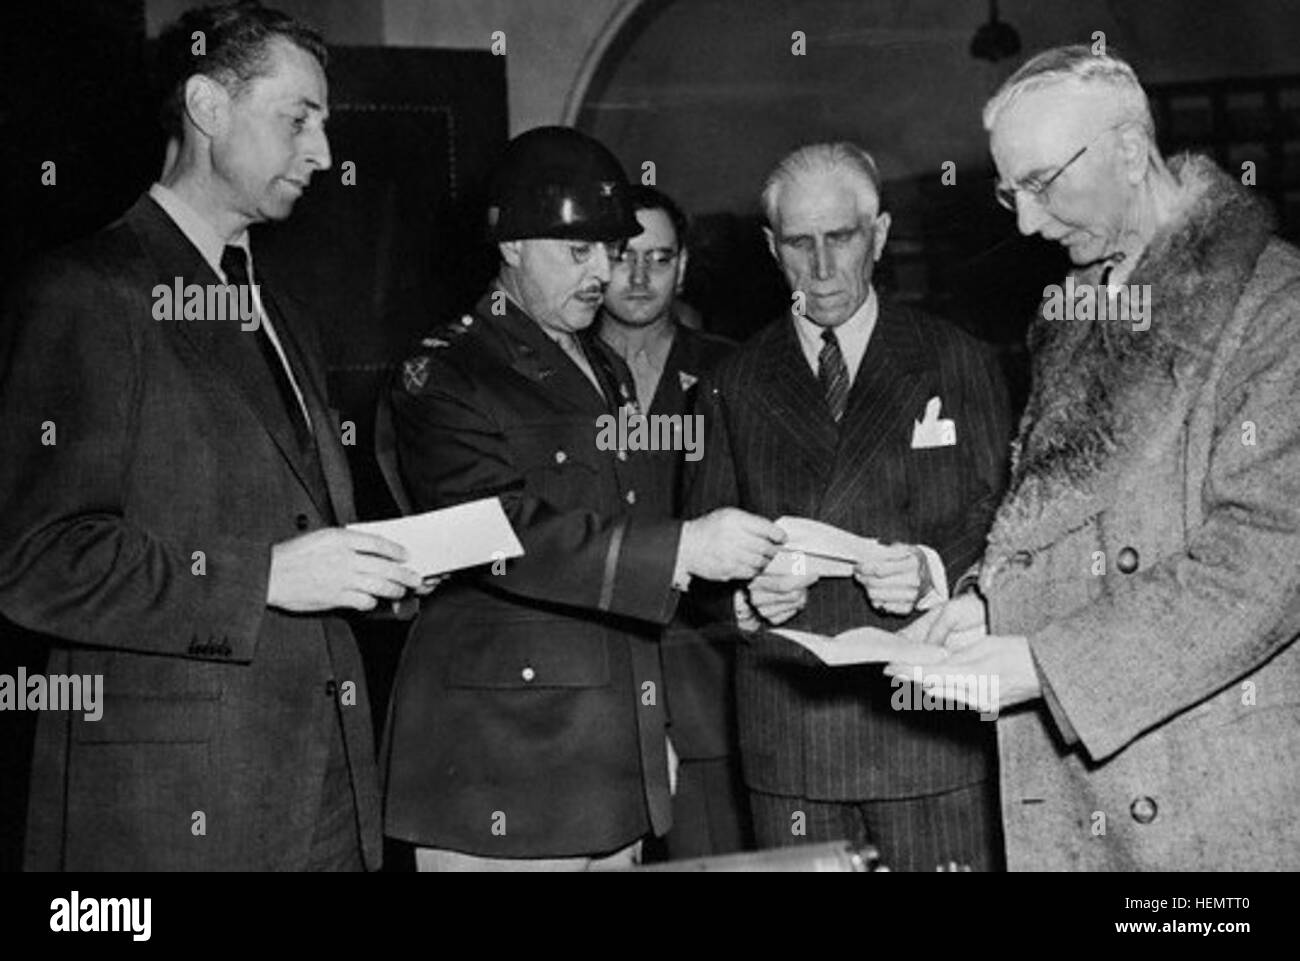 04 Oct 1946, Nuerenberg, Allemagne --- Le Colonel D. C. Andrus, l'ARMÉE AMÉRICAINE, présente ici des lettres certifiant la liberté de Hans Fritsche, (L), Franz Von Papen, (deuxième forme droite), et Hjalmar Schact, (R), peu après les trois Allemands ont été acquittés des accusations de crimes de guerre par le Tribunal international. Le colonel Andrus est en charge de la prison où tous les 21 accusés avaient été confinés pendant le procès. --- Image par © Bettmann/CORBIS Fritzsche, Papen, Schacht avec Andrus Banque D'Images